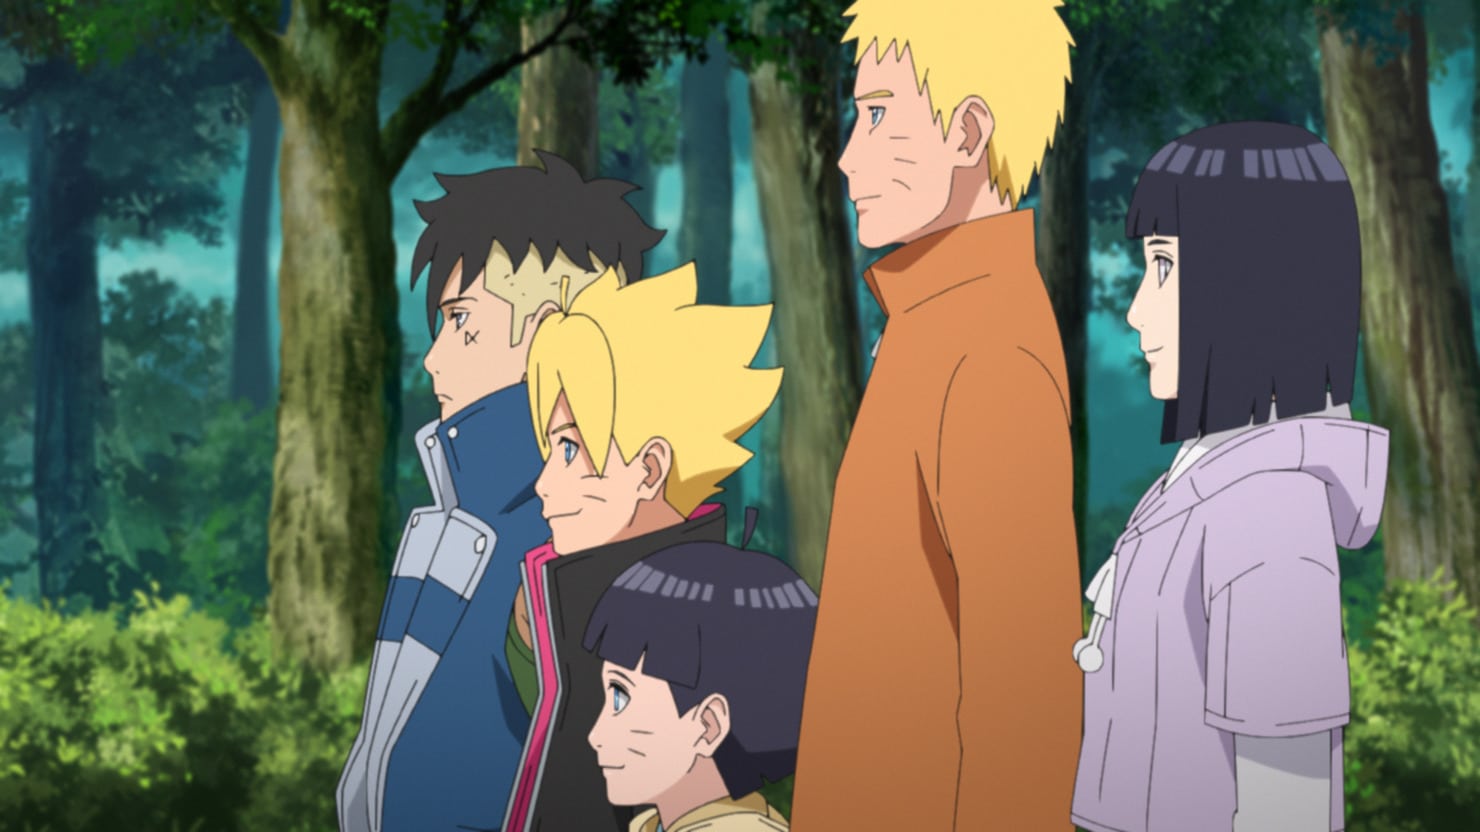 Assistir Boruto: Naruto Next Generations Episodio 291 Online